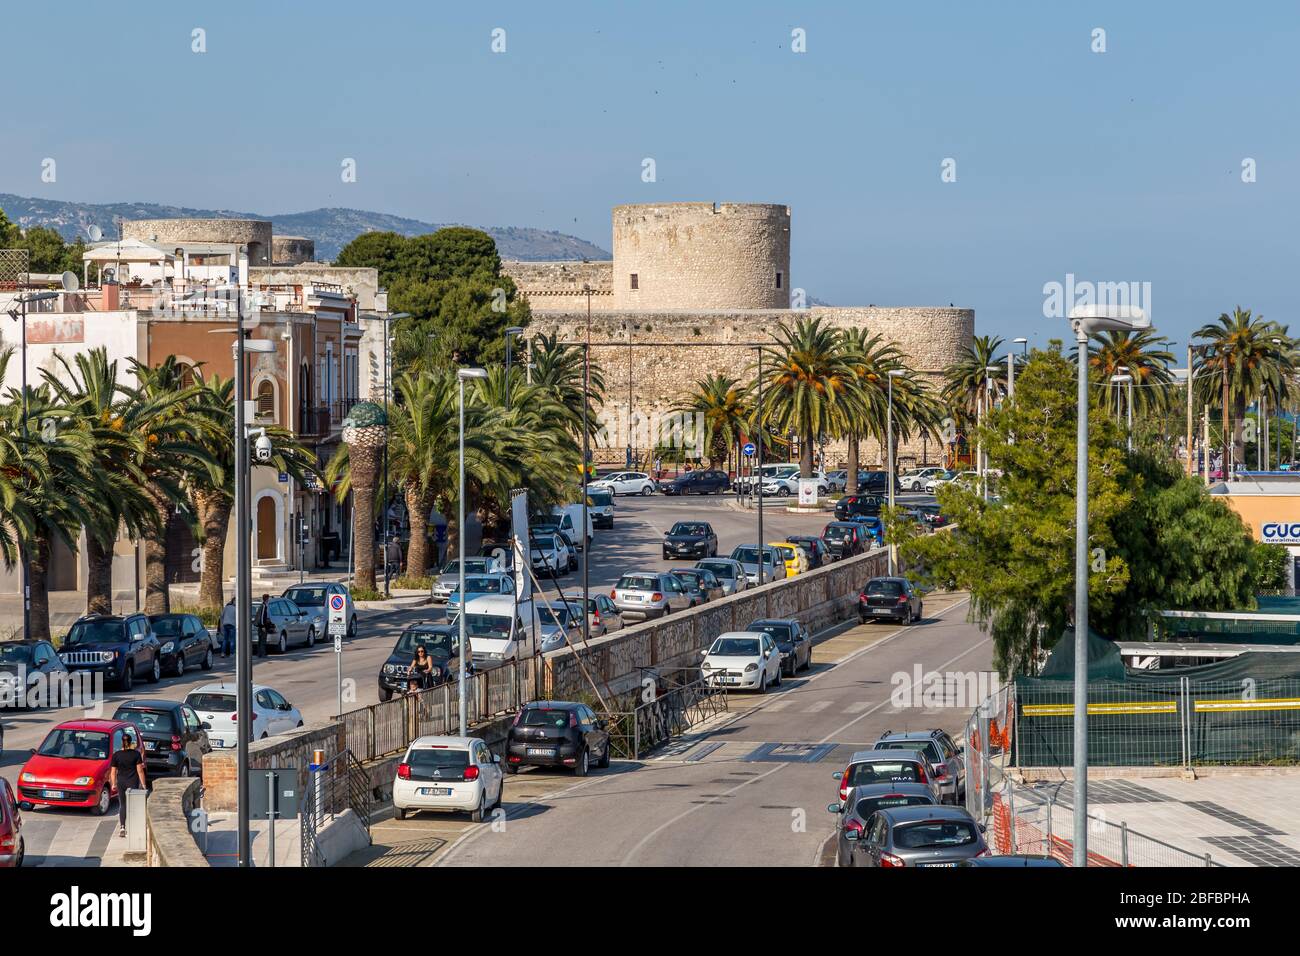 Manfredonia, eine mediterrane Hafenstadt in der Region Apulien. Gargano Halbinsel, Teil seines Landes ist Gargano Nationalpark Stockfoto